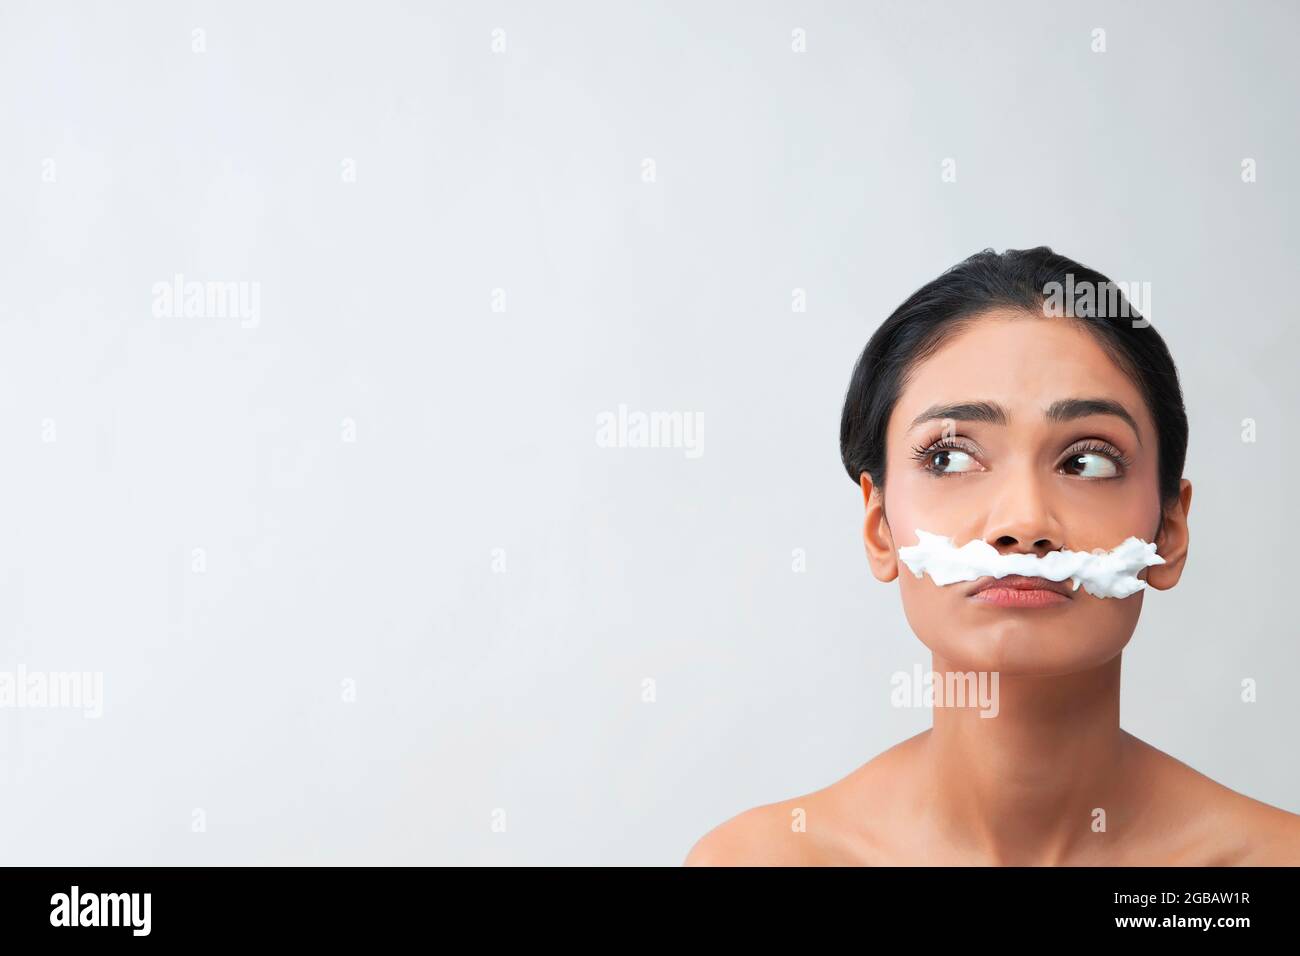 Eine junge Frau mit Haarentfernungscreme auf ihrem Gesicht, um Gesichtsbehaarung zu entfernen. Stockfoto